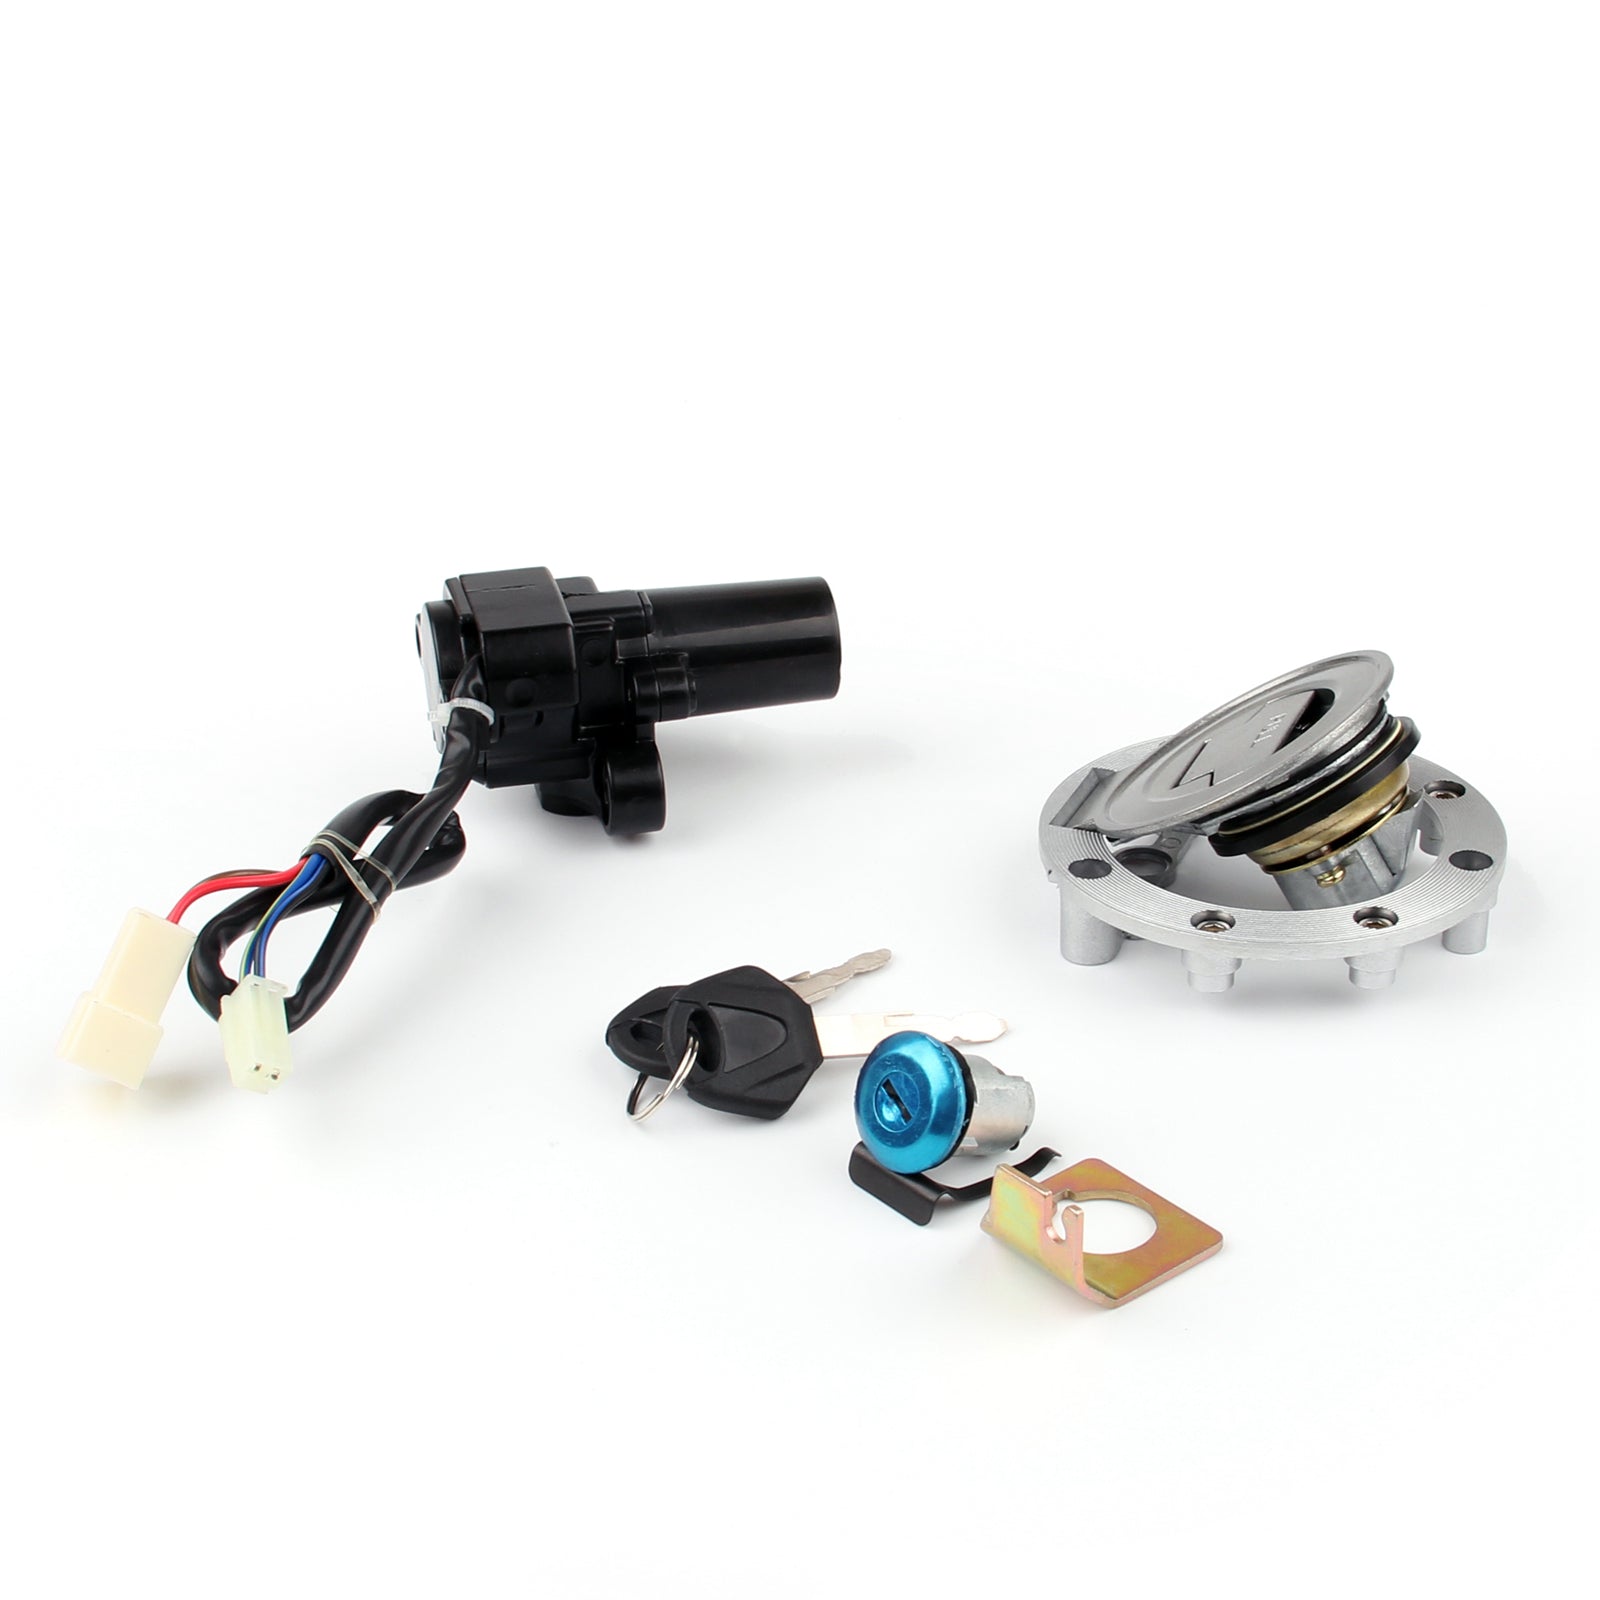 Ignition Switch Lock & Fuel Gas Cap Key Set Fit For Yamaha YZF R6 R6 2006-2016 YZF R1 R1 2004-2014 MT-01 2005-2009